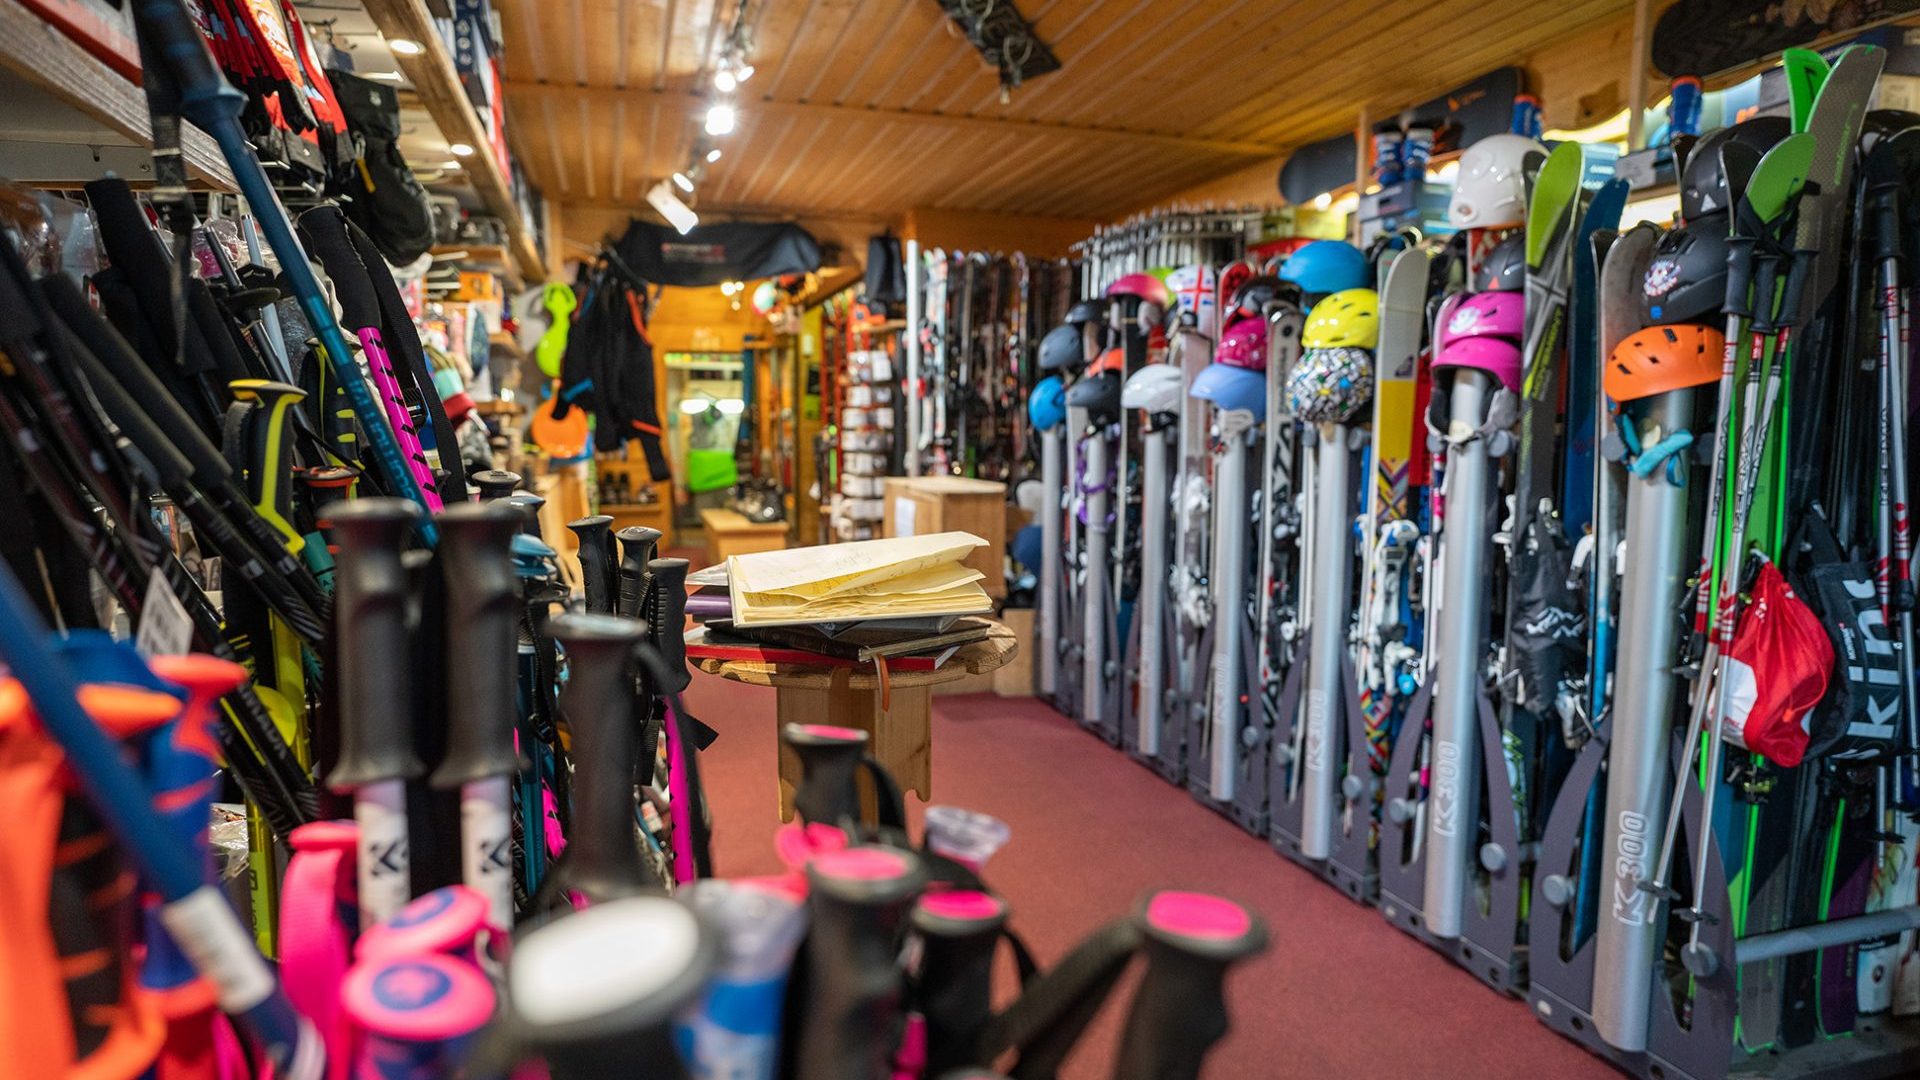 Skis et bâtons : location de matériel